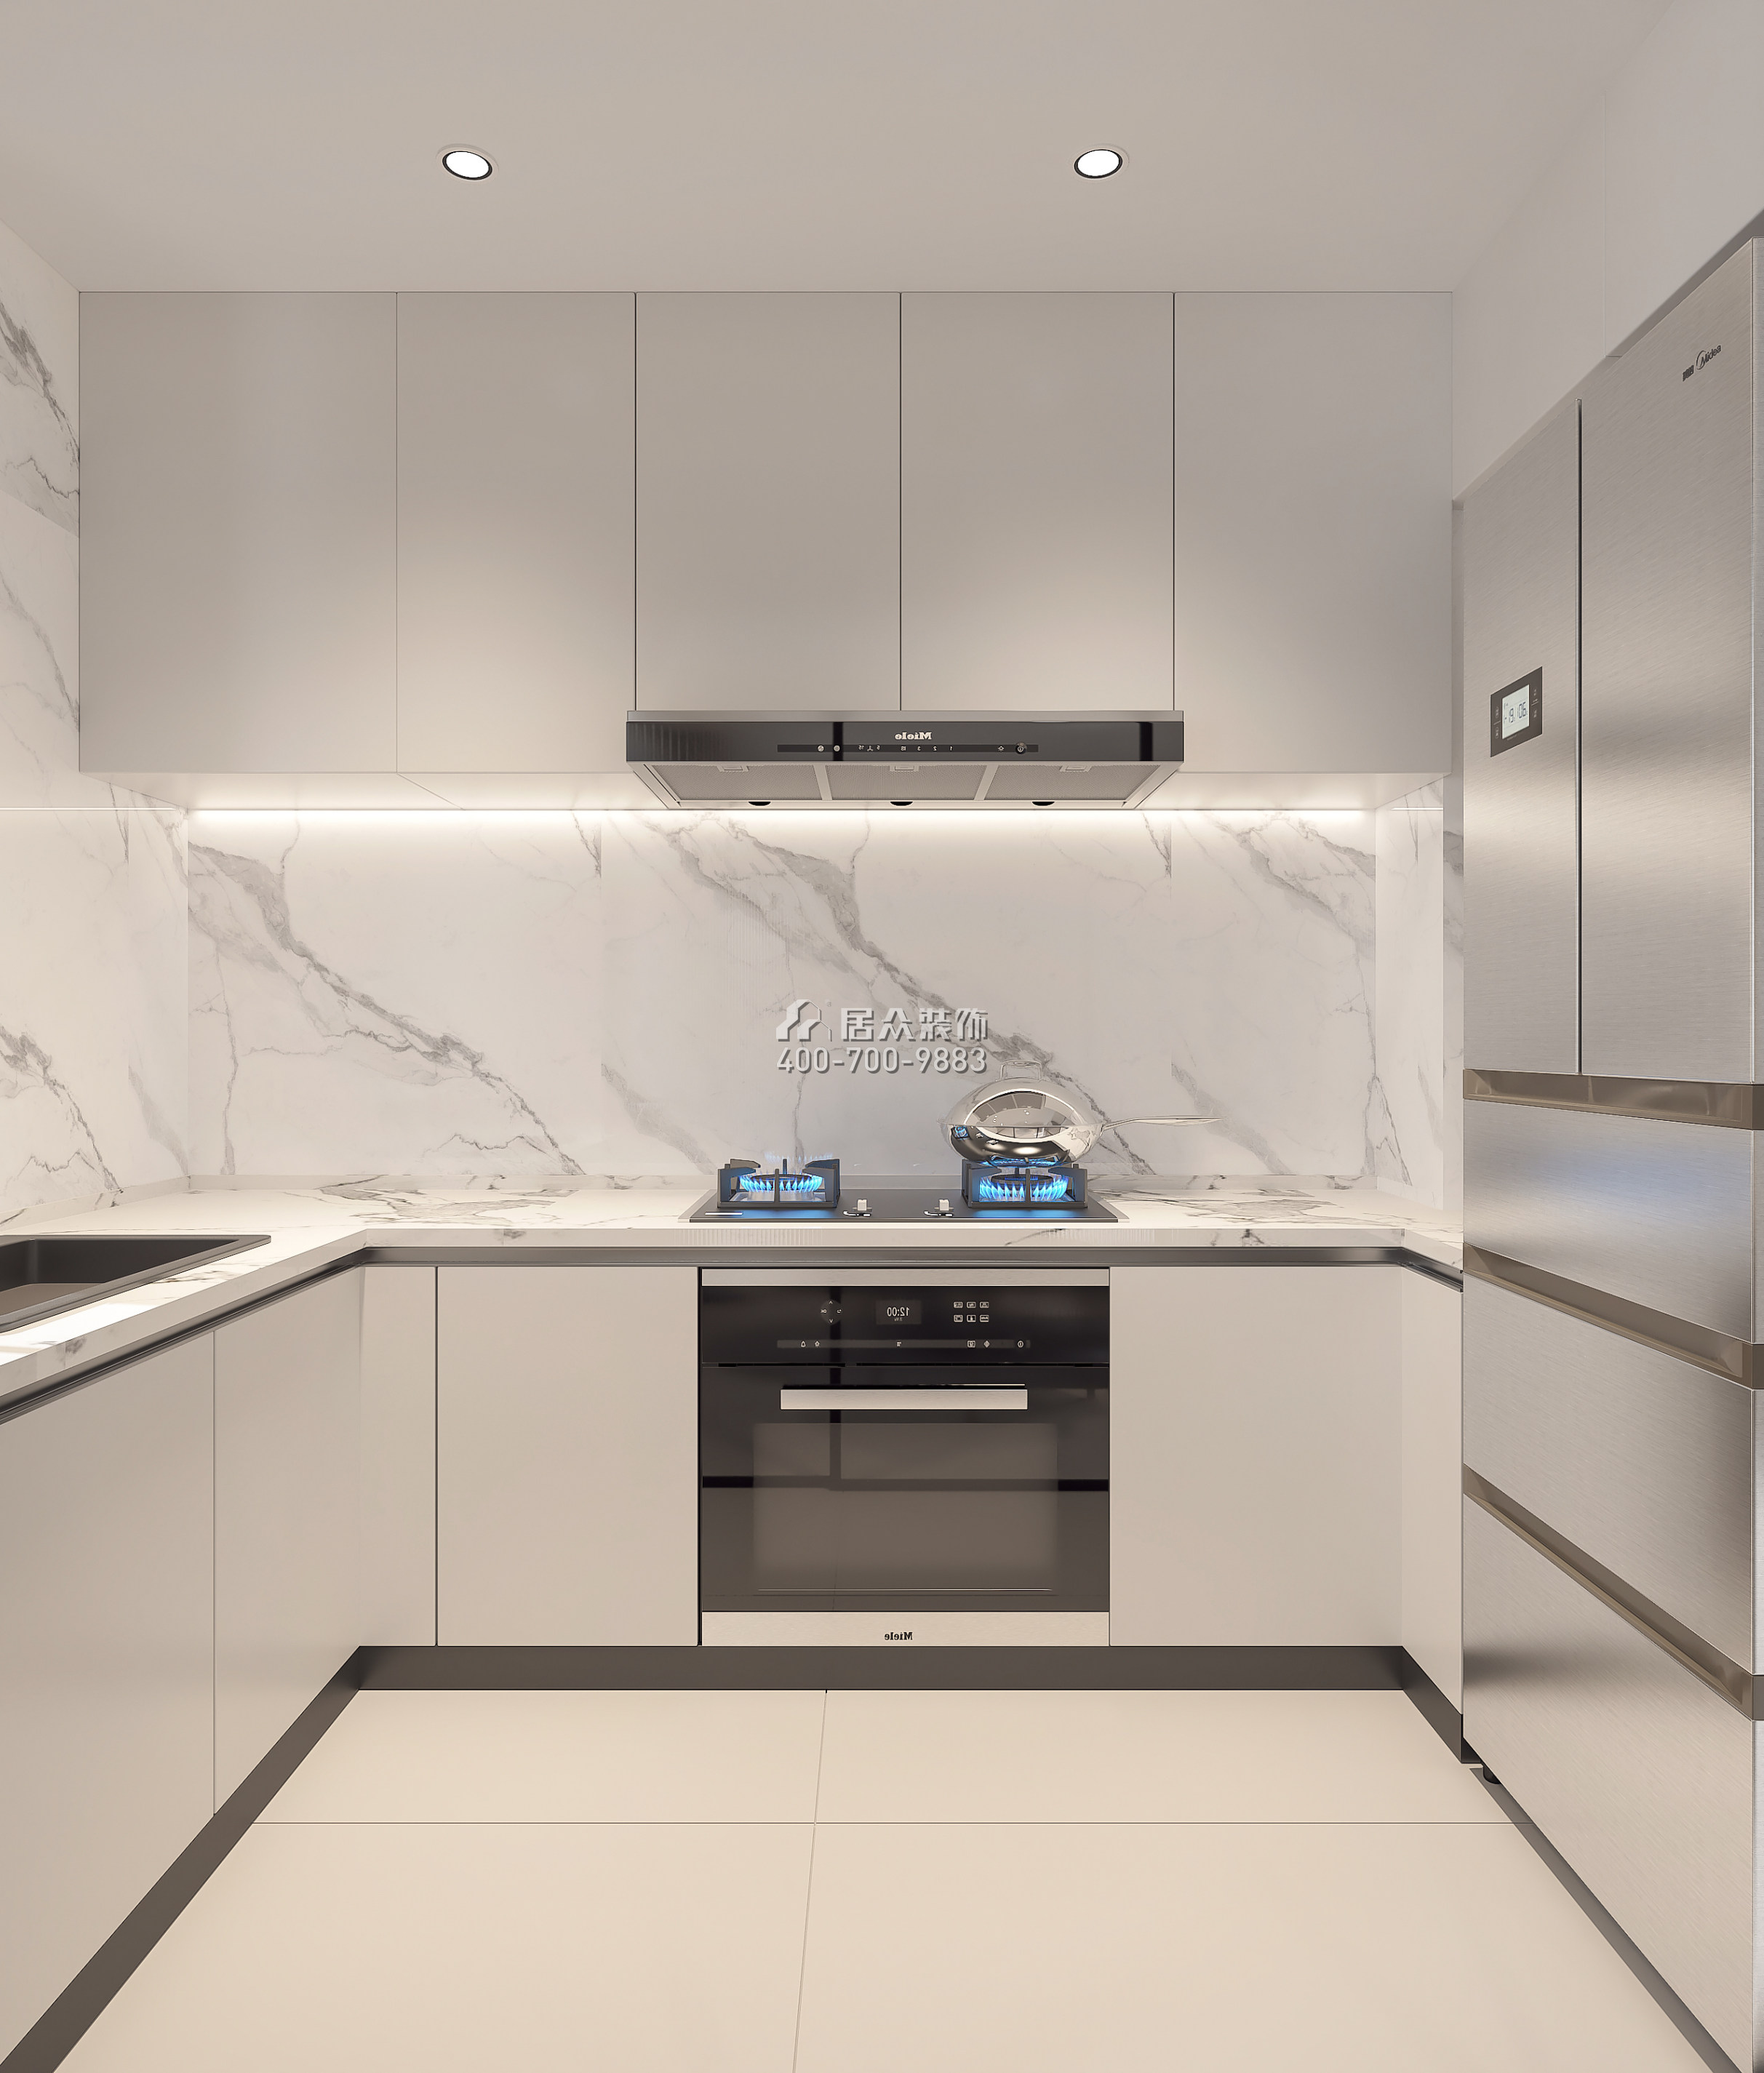 深鐵閱山鏡88平方米現代簡約風格平層戶型廚房裝修效果圖